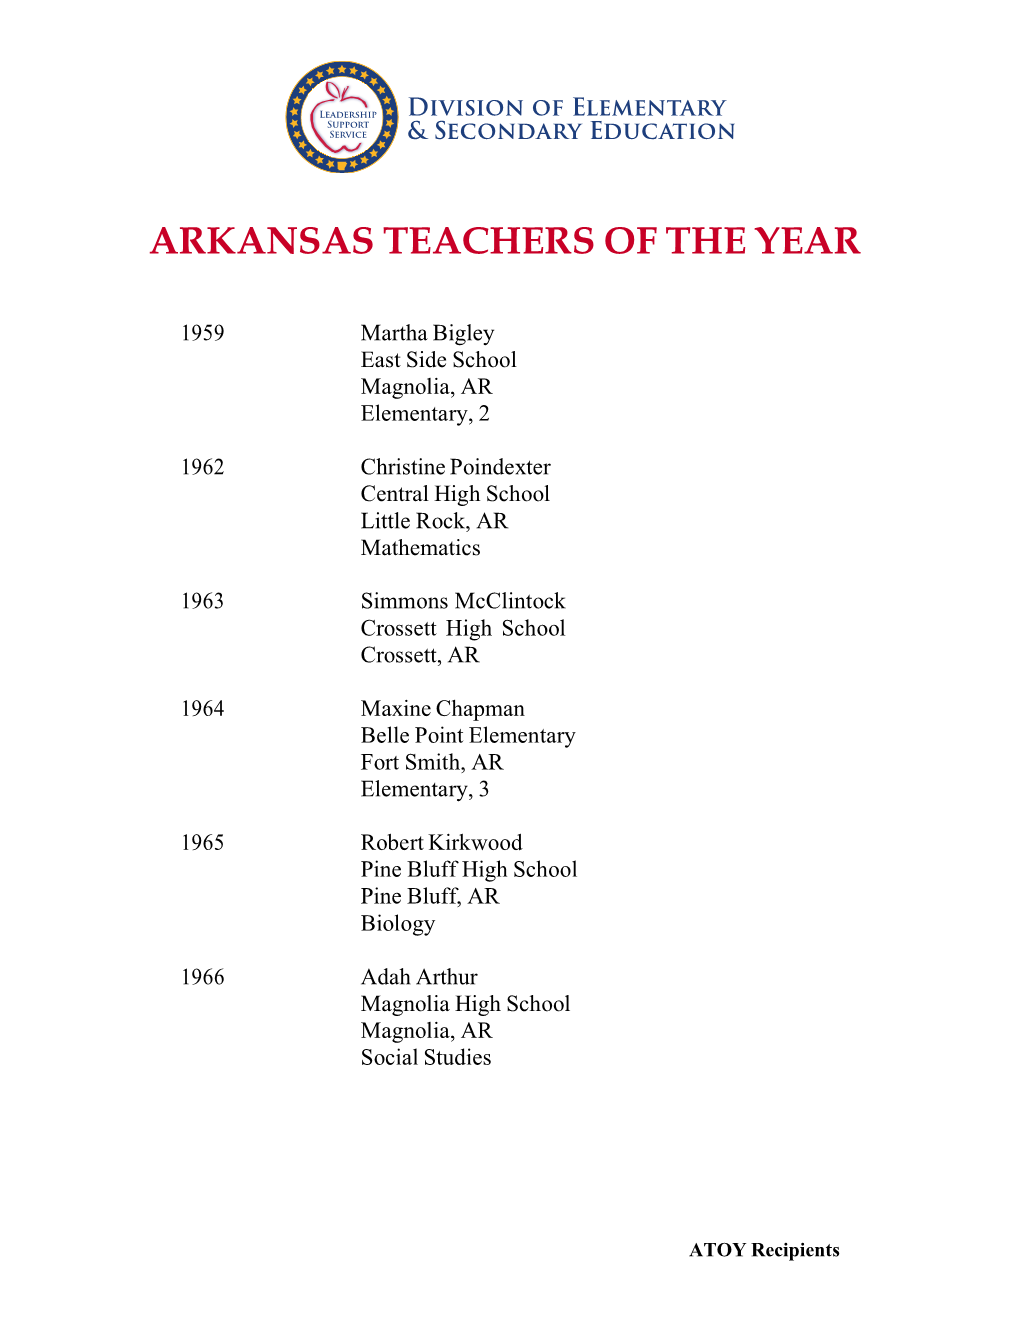 Arkansas Teacher of the Year (ATOY) Recipients